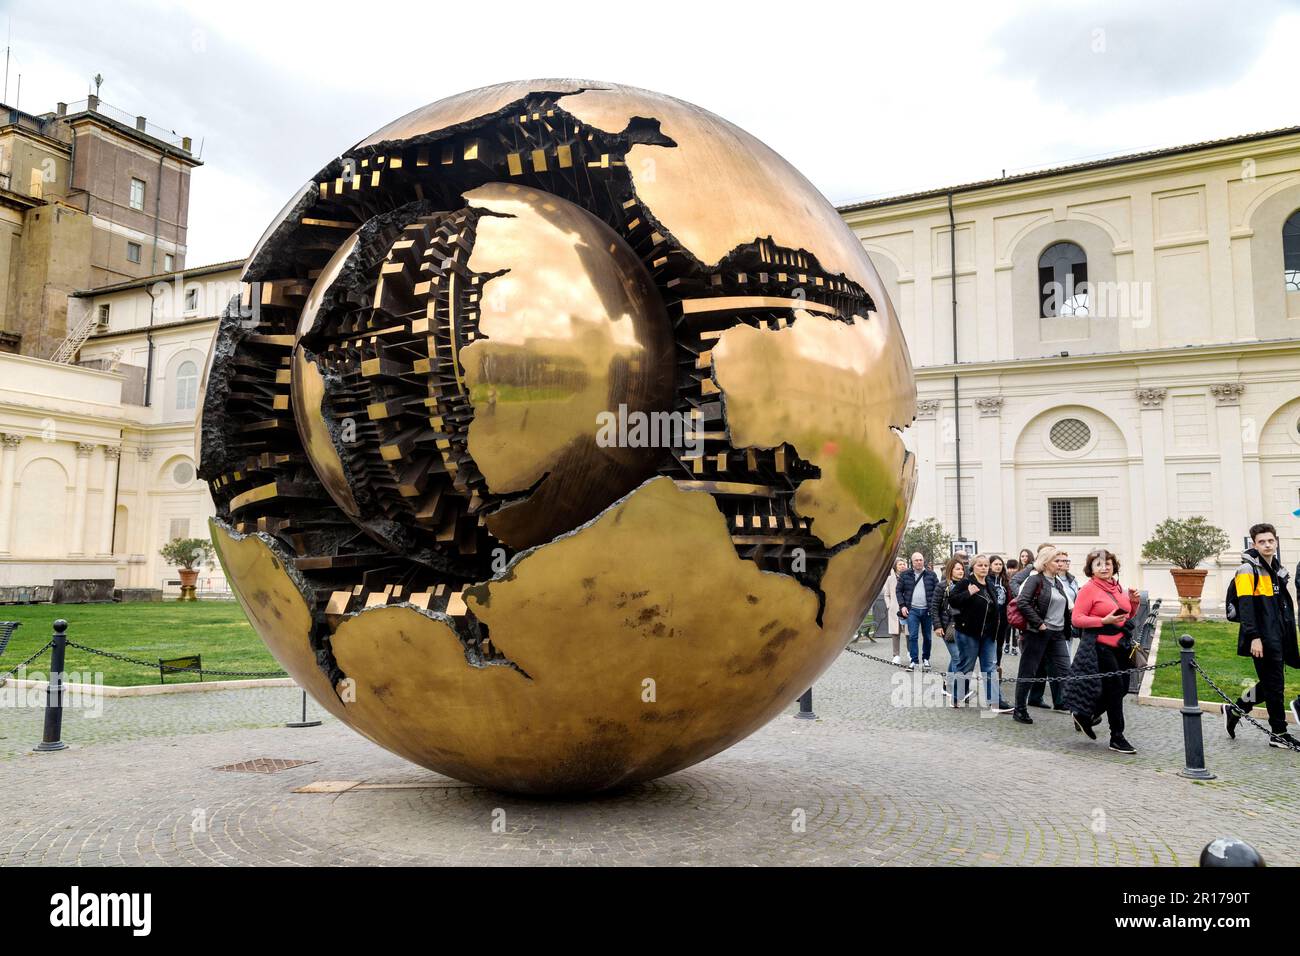 ROMA, VATICANO - MARTH 9, 2023: Si tratta di una moderna scultura girevole sfera dentro una sfera (autore A. Pomodoro) esposta ai visitatori del cortile Foto Stock